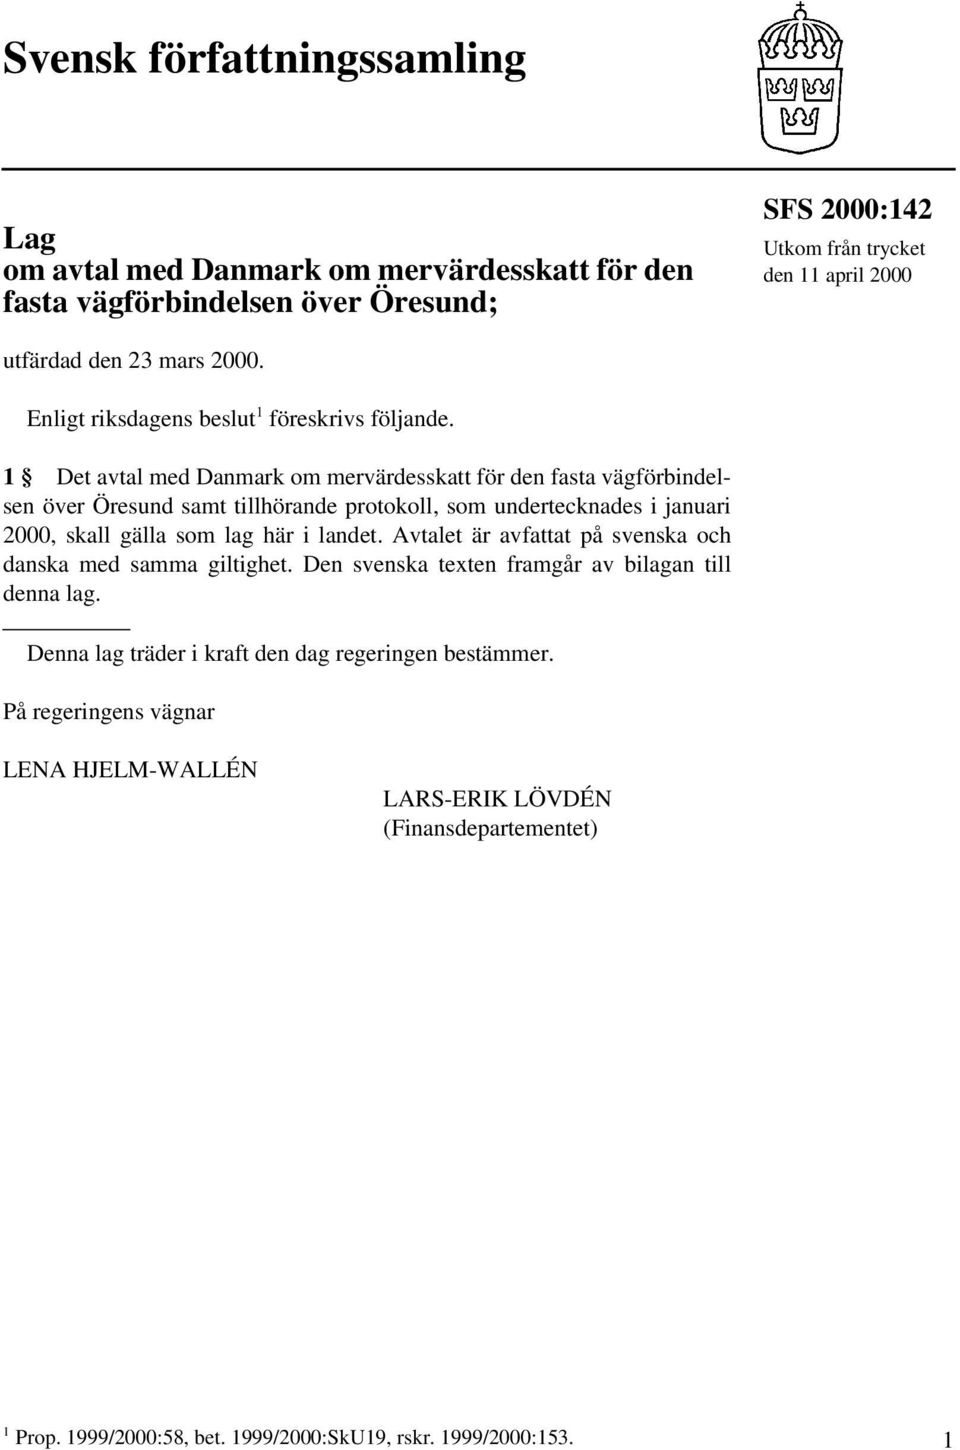 1 Det avtal med Danmark om mervärdesskatt för den fasta vägförbindelsen över Öresund samt tillhörande protokoll, som undertecknades i januari 2000, skall gälla som lag här i landet.